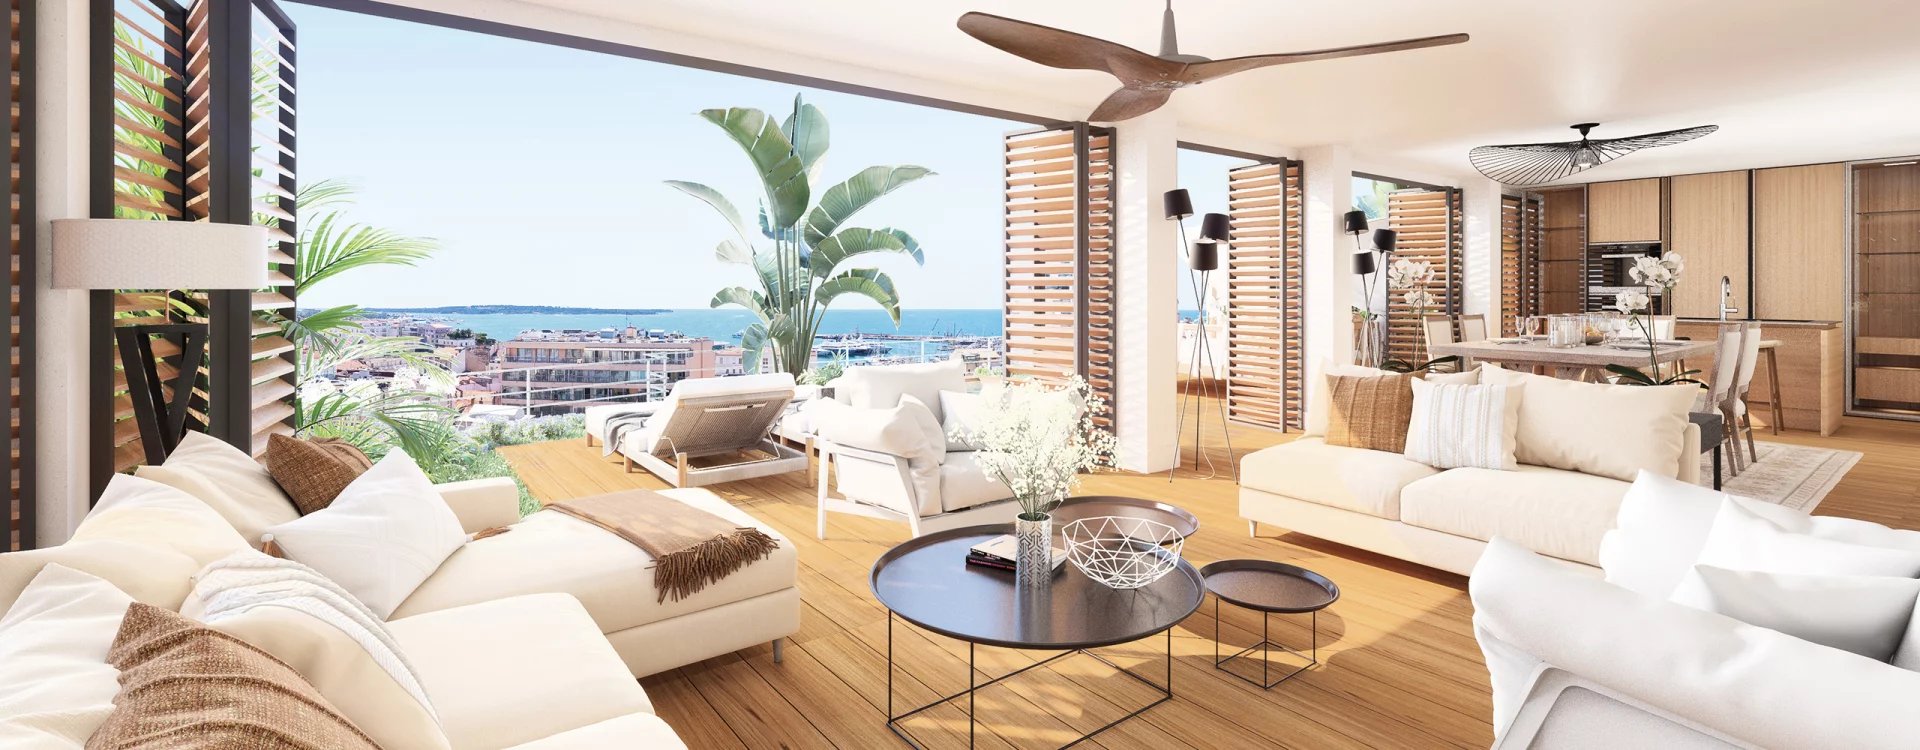 Villa Lérins - Panoramablick auf das Zentrum von Cannes